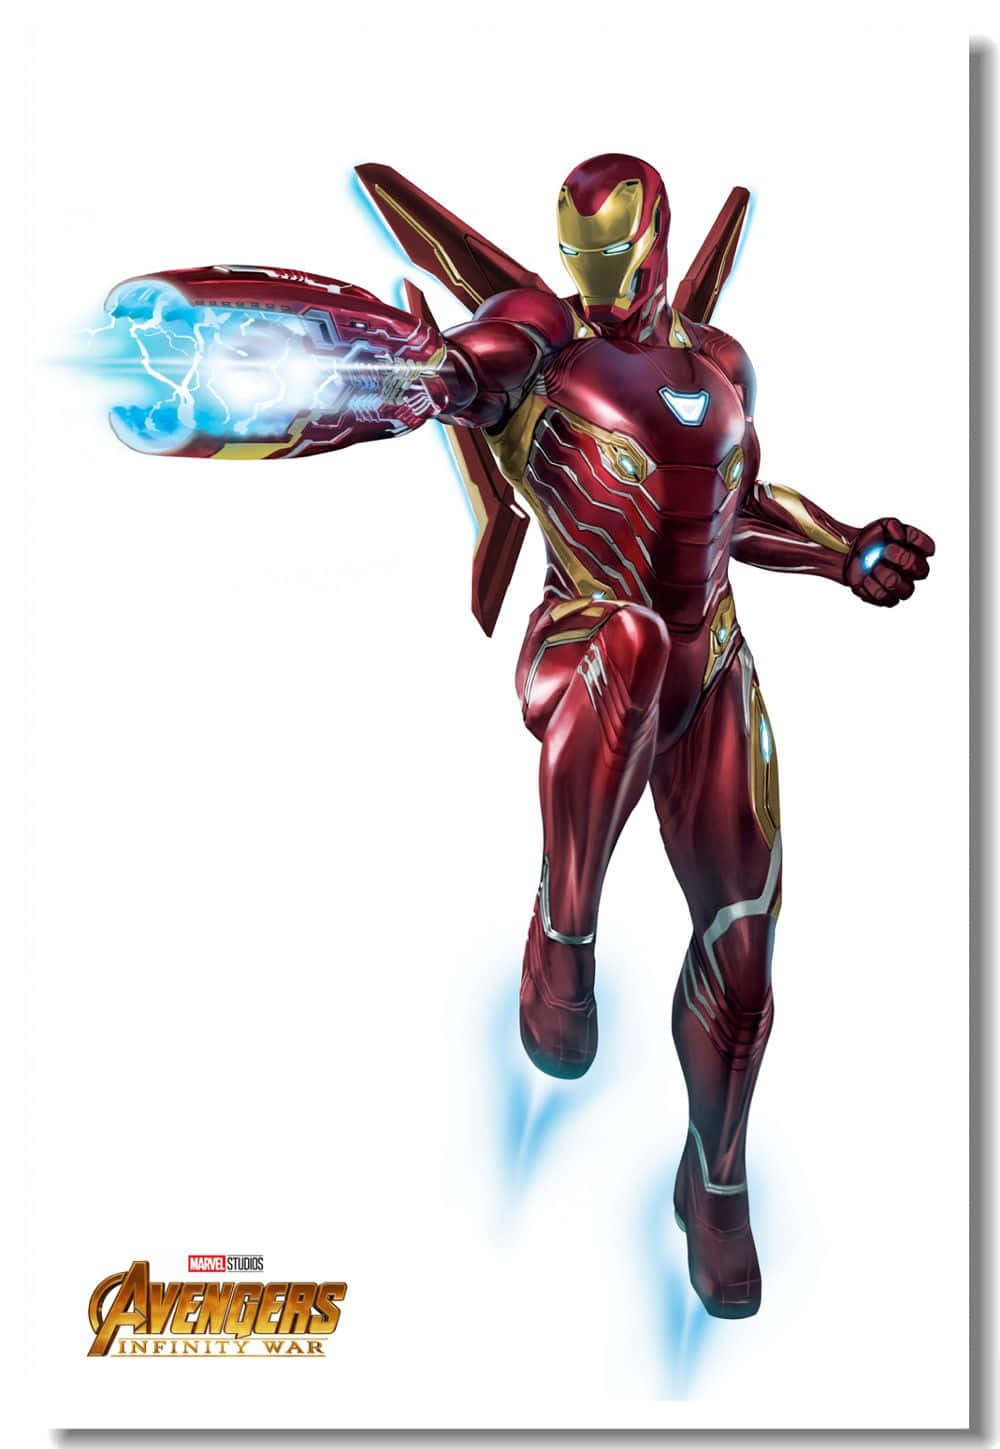 Avengers Iron Man Infinity War Poster. Wallpaper